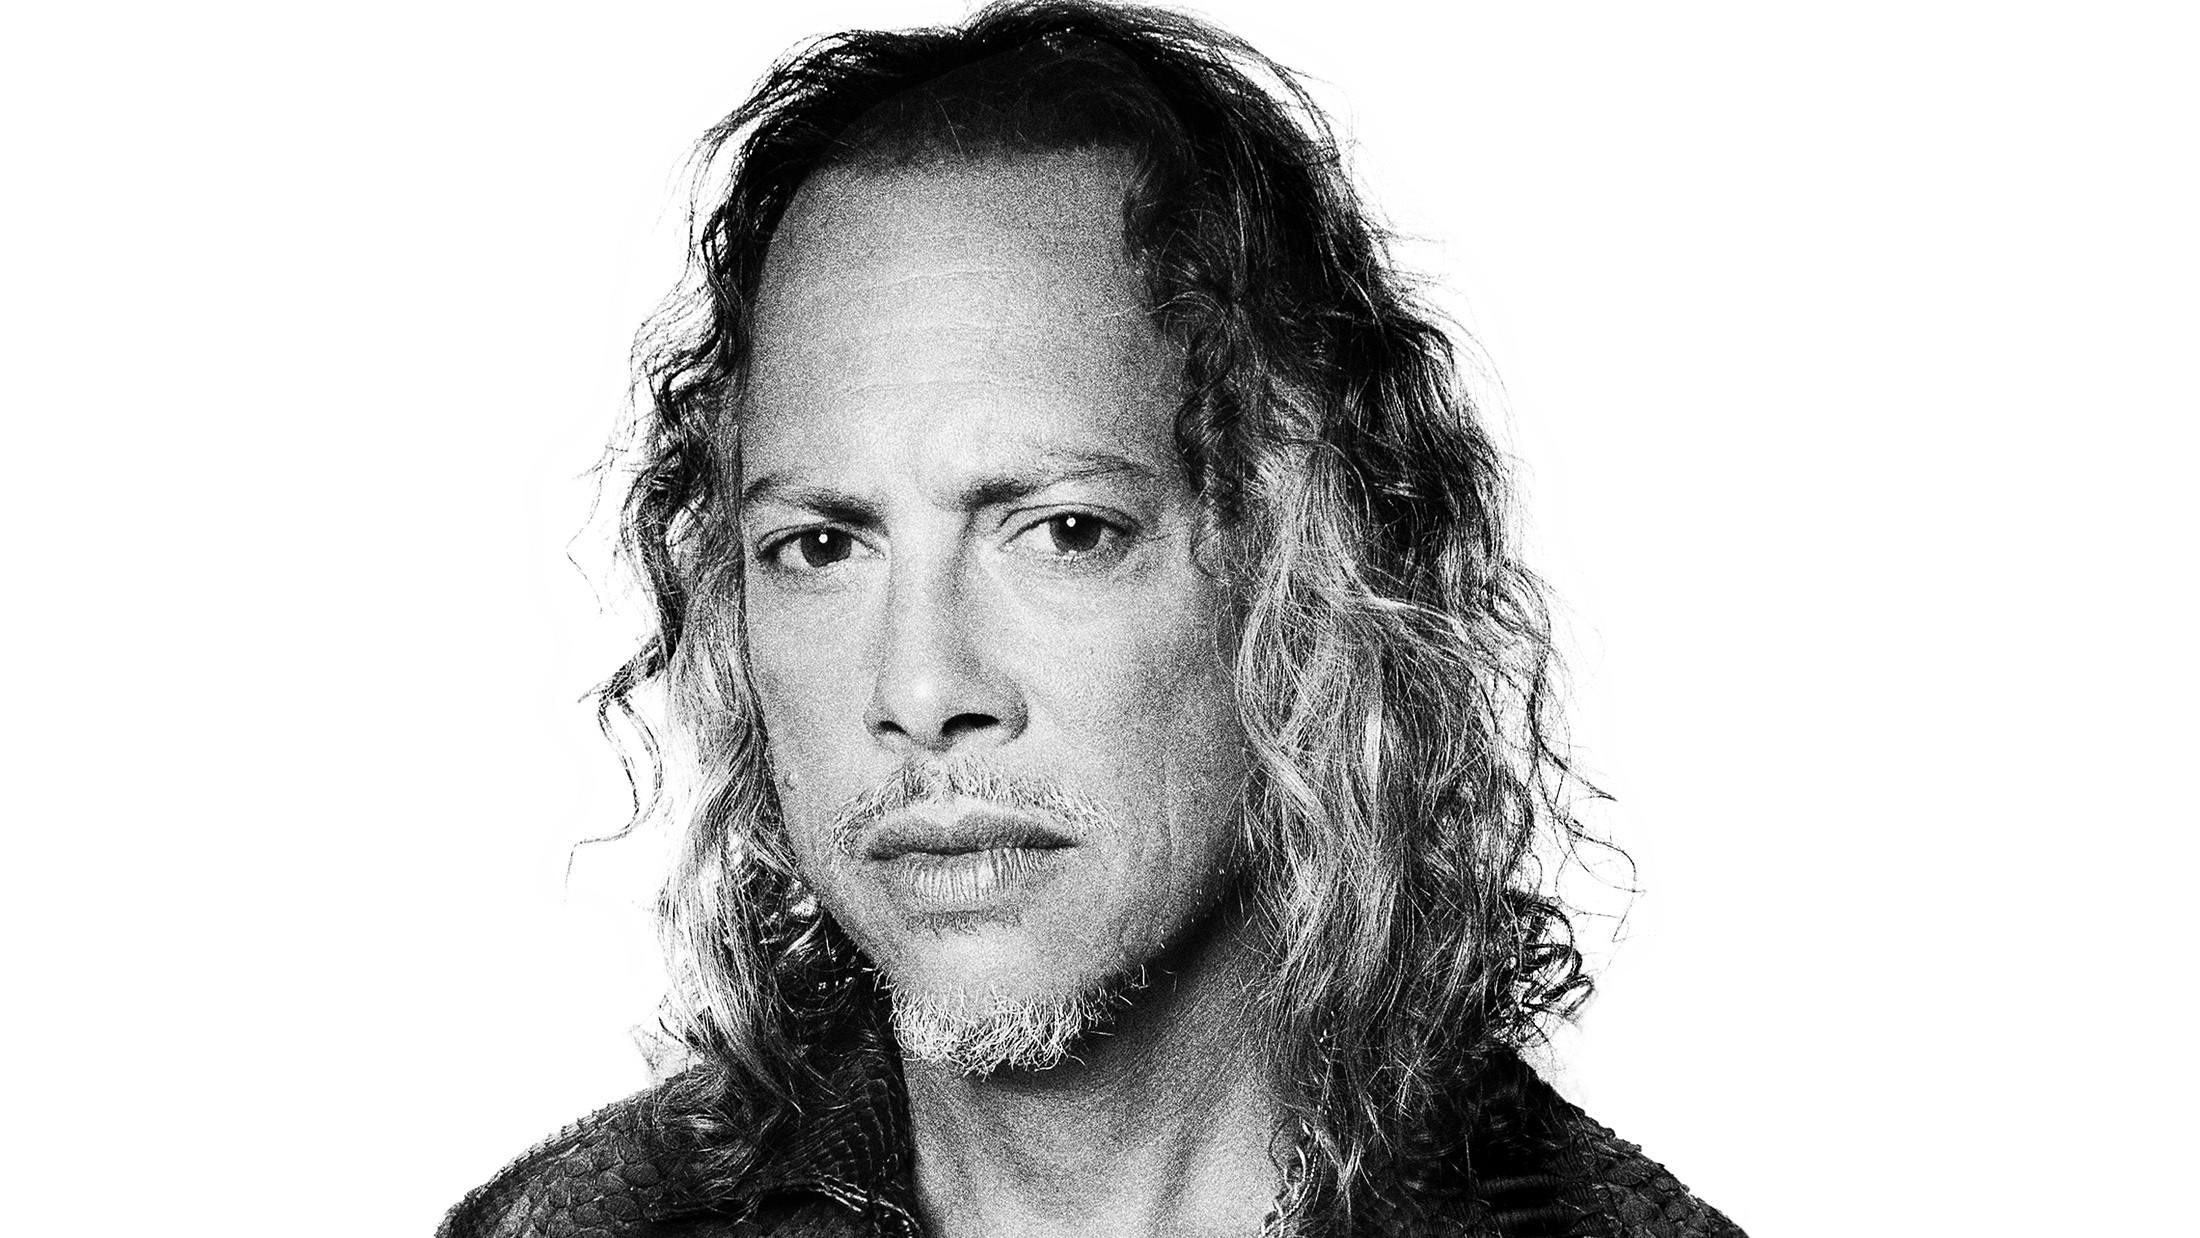 Listen: Metallica’s Kirk Hammett streams epic debut single, High Plains Drifter